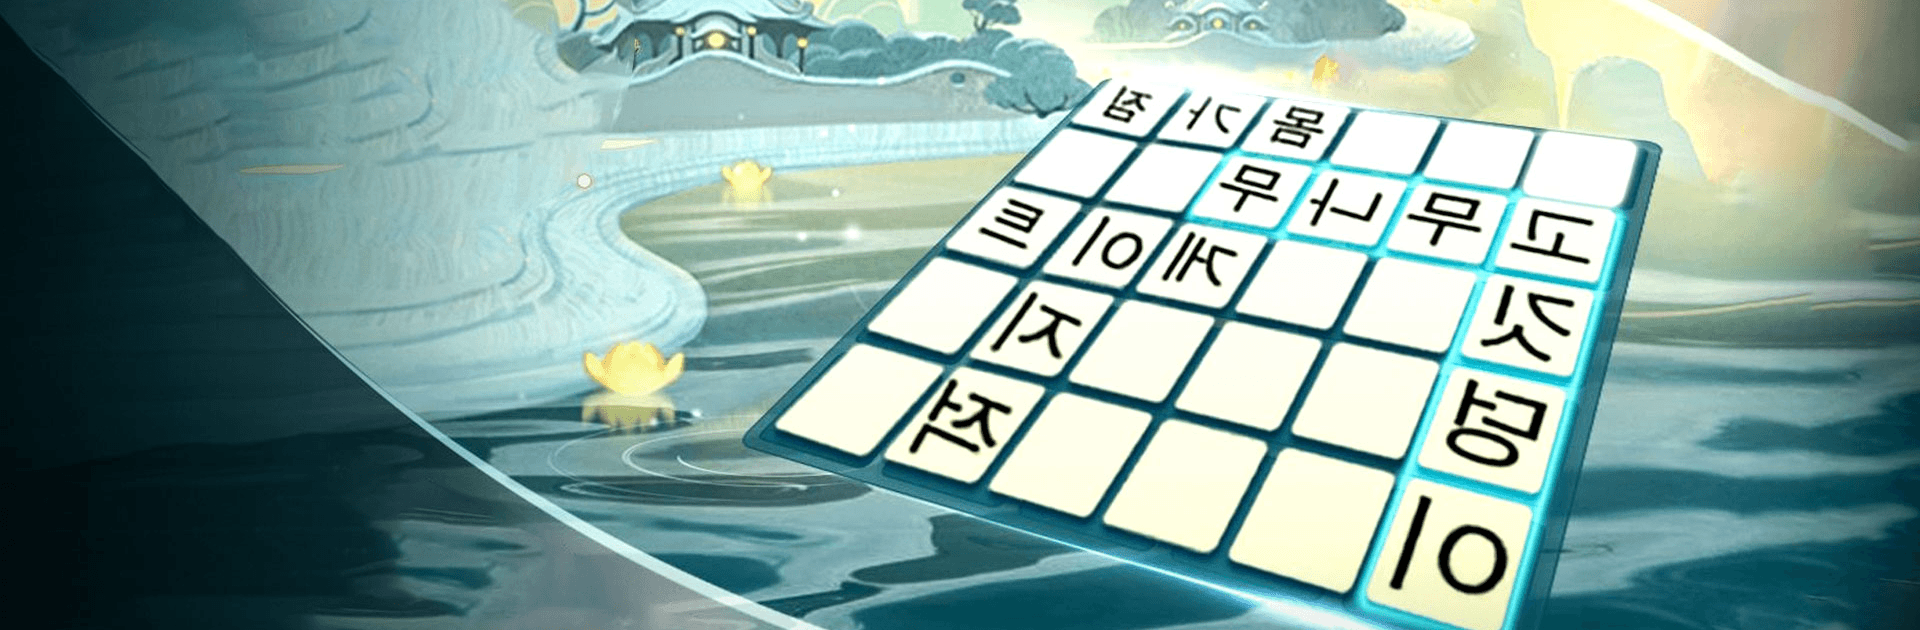 워드퍼즐 - 단어 게임! 재미있는 무료 단어 퍼즐